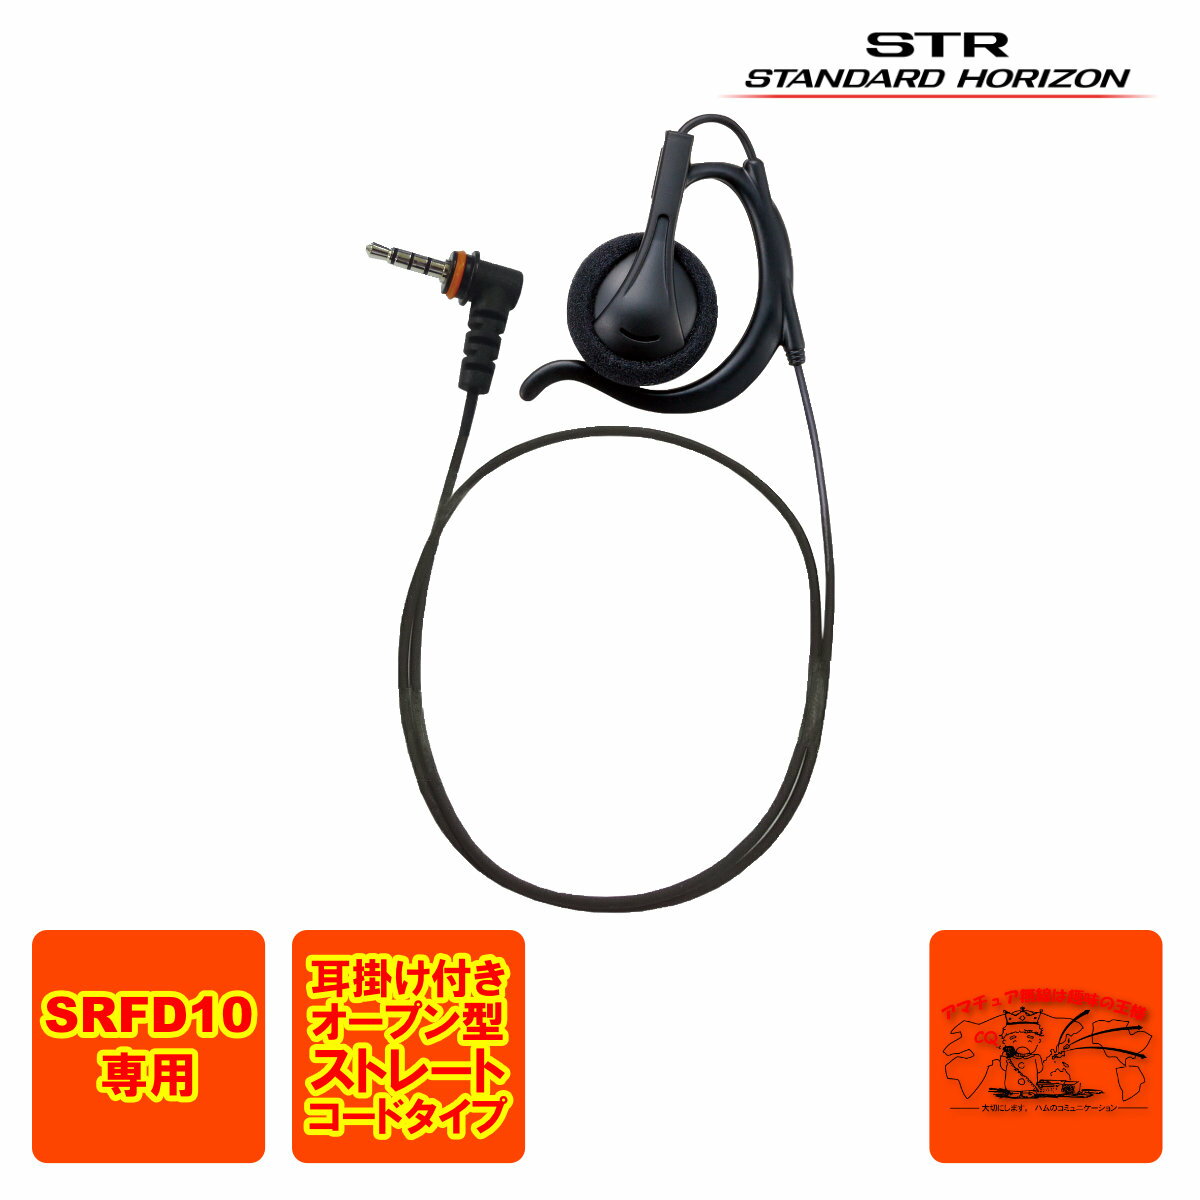 SRFD10専用イヤホン 耳掛け式オープンイヤーパッド型 イヤーピースの色は、黒 ケーブル長：約50cm コネクター形状：1ピン4極防水特殊コネクター ※他の機種では使用できません。